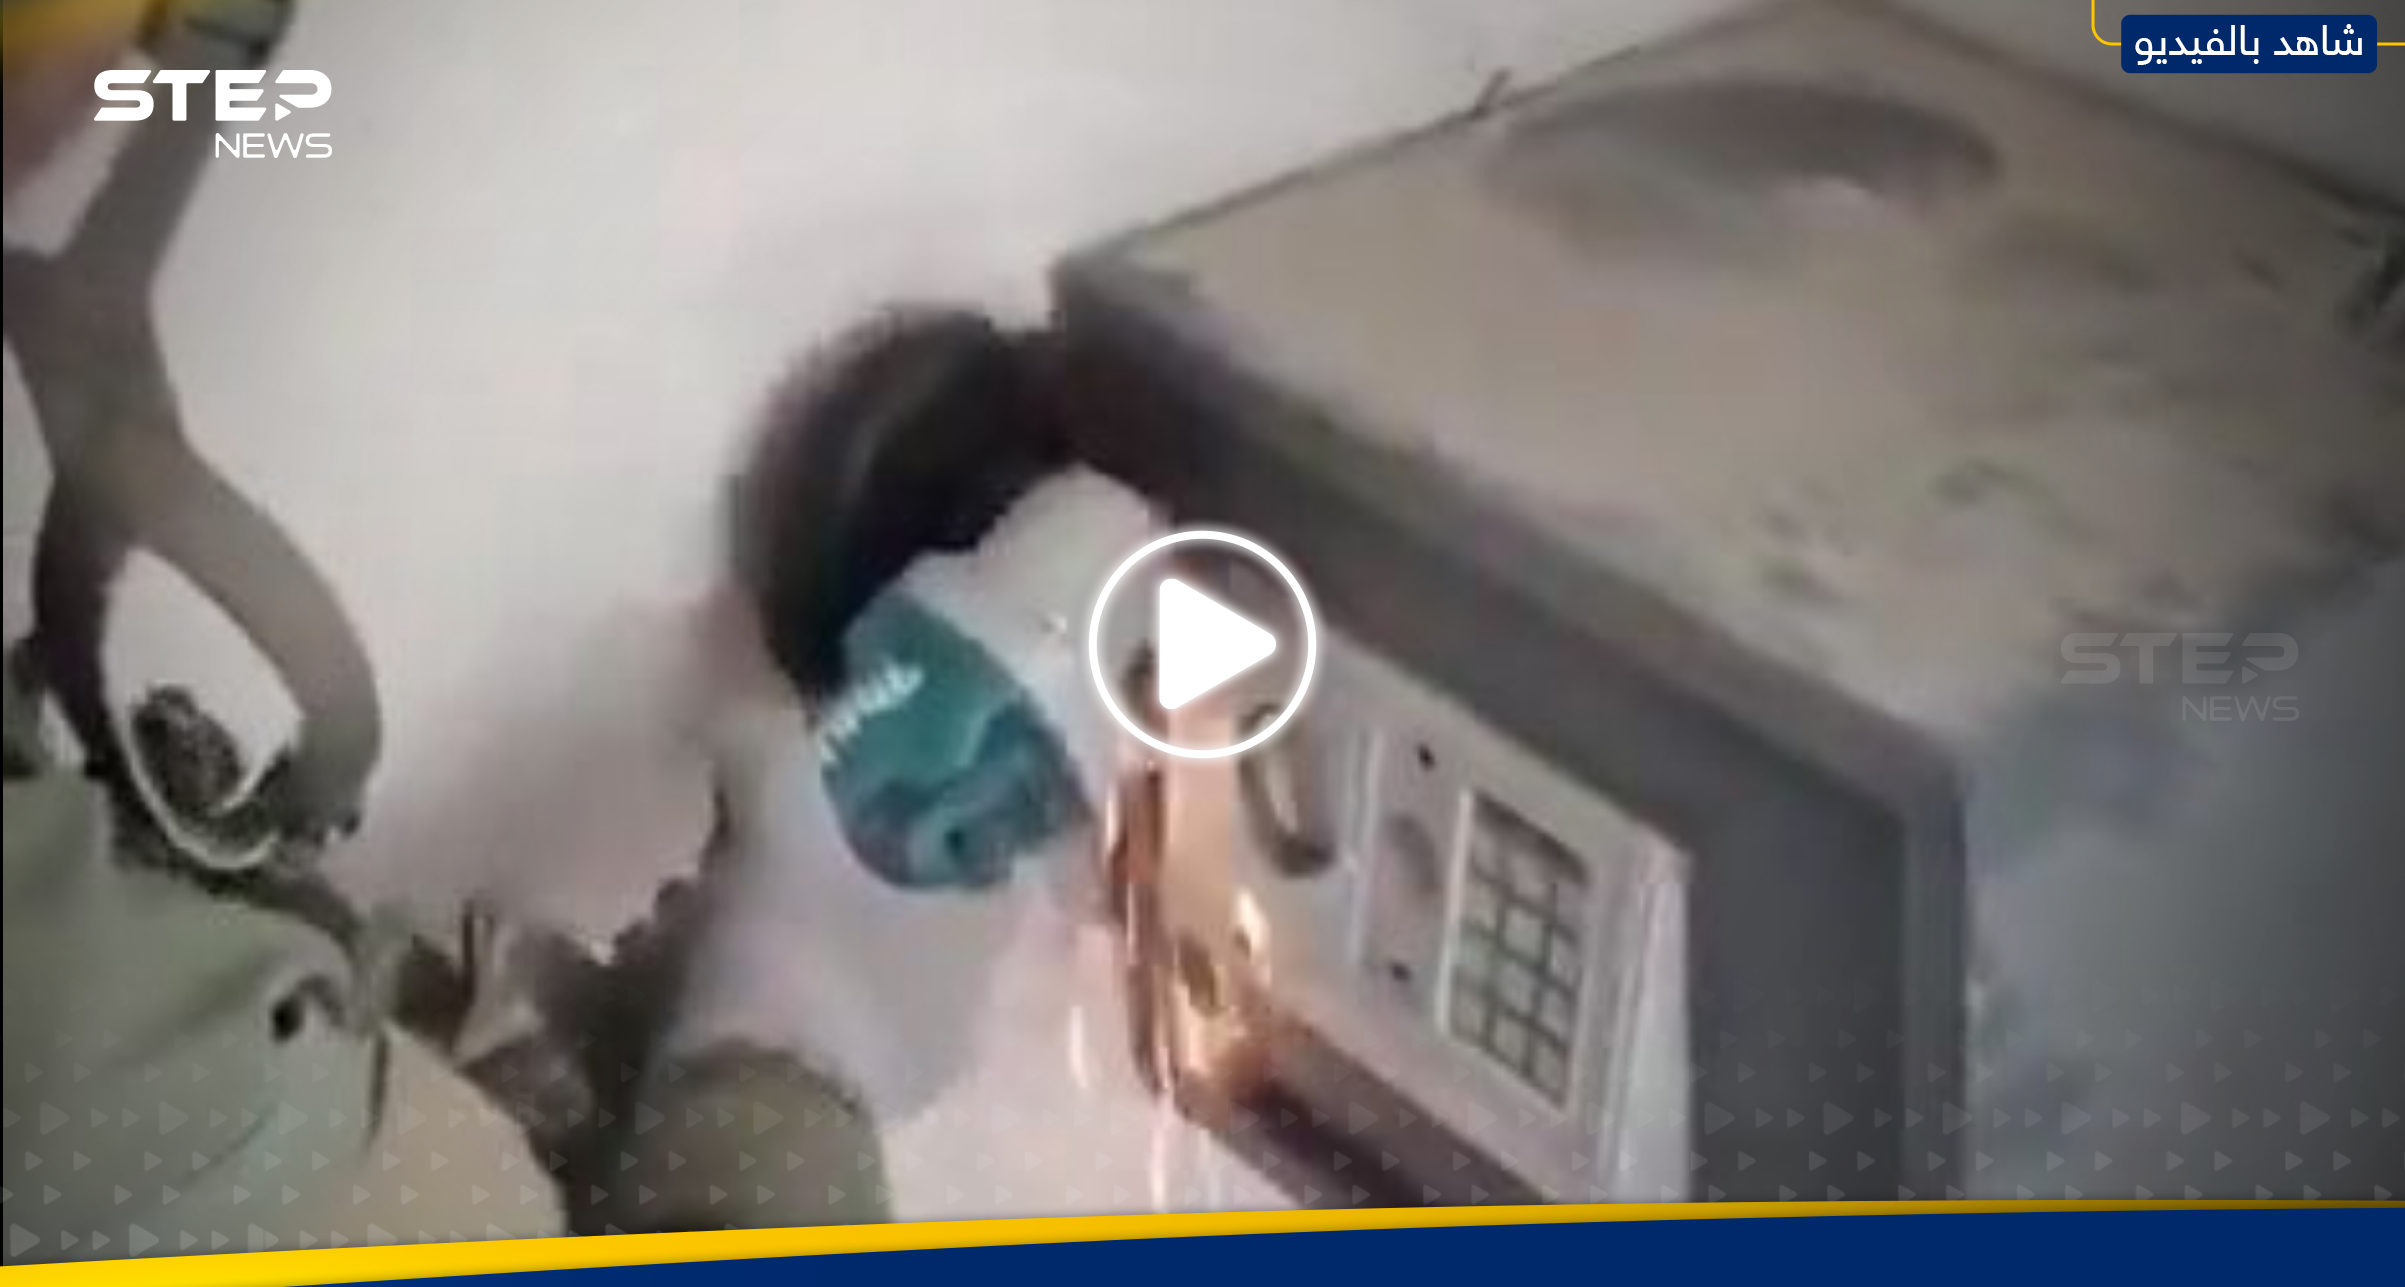 بالفيديو|| مشاهد لما فعله جنود الجيش الإسرائيلي عند العثور على خزنة أموال بمنزل فلسطيني في غزة 